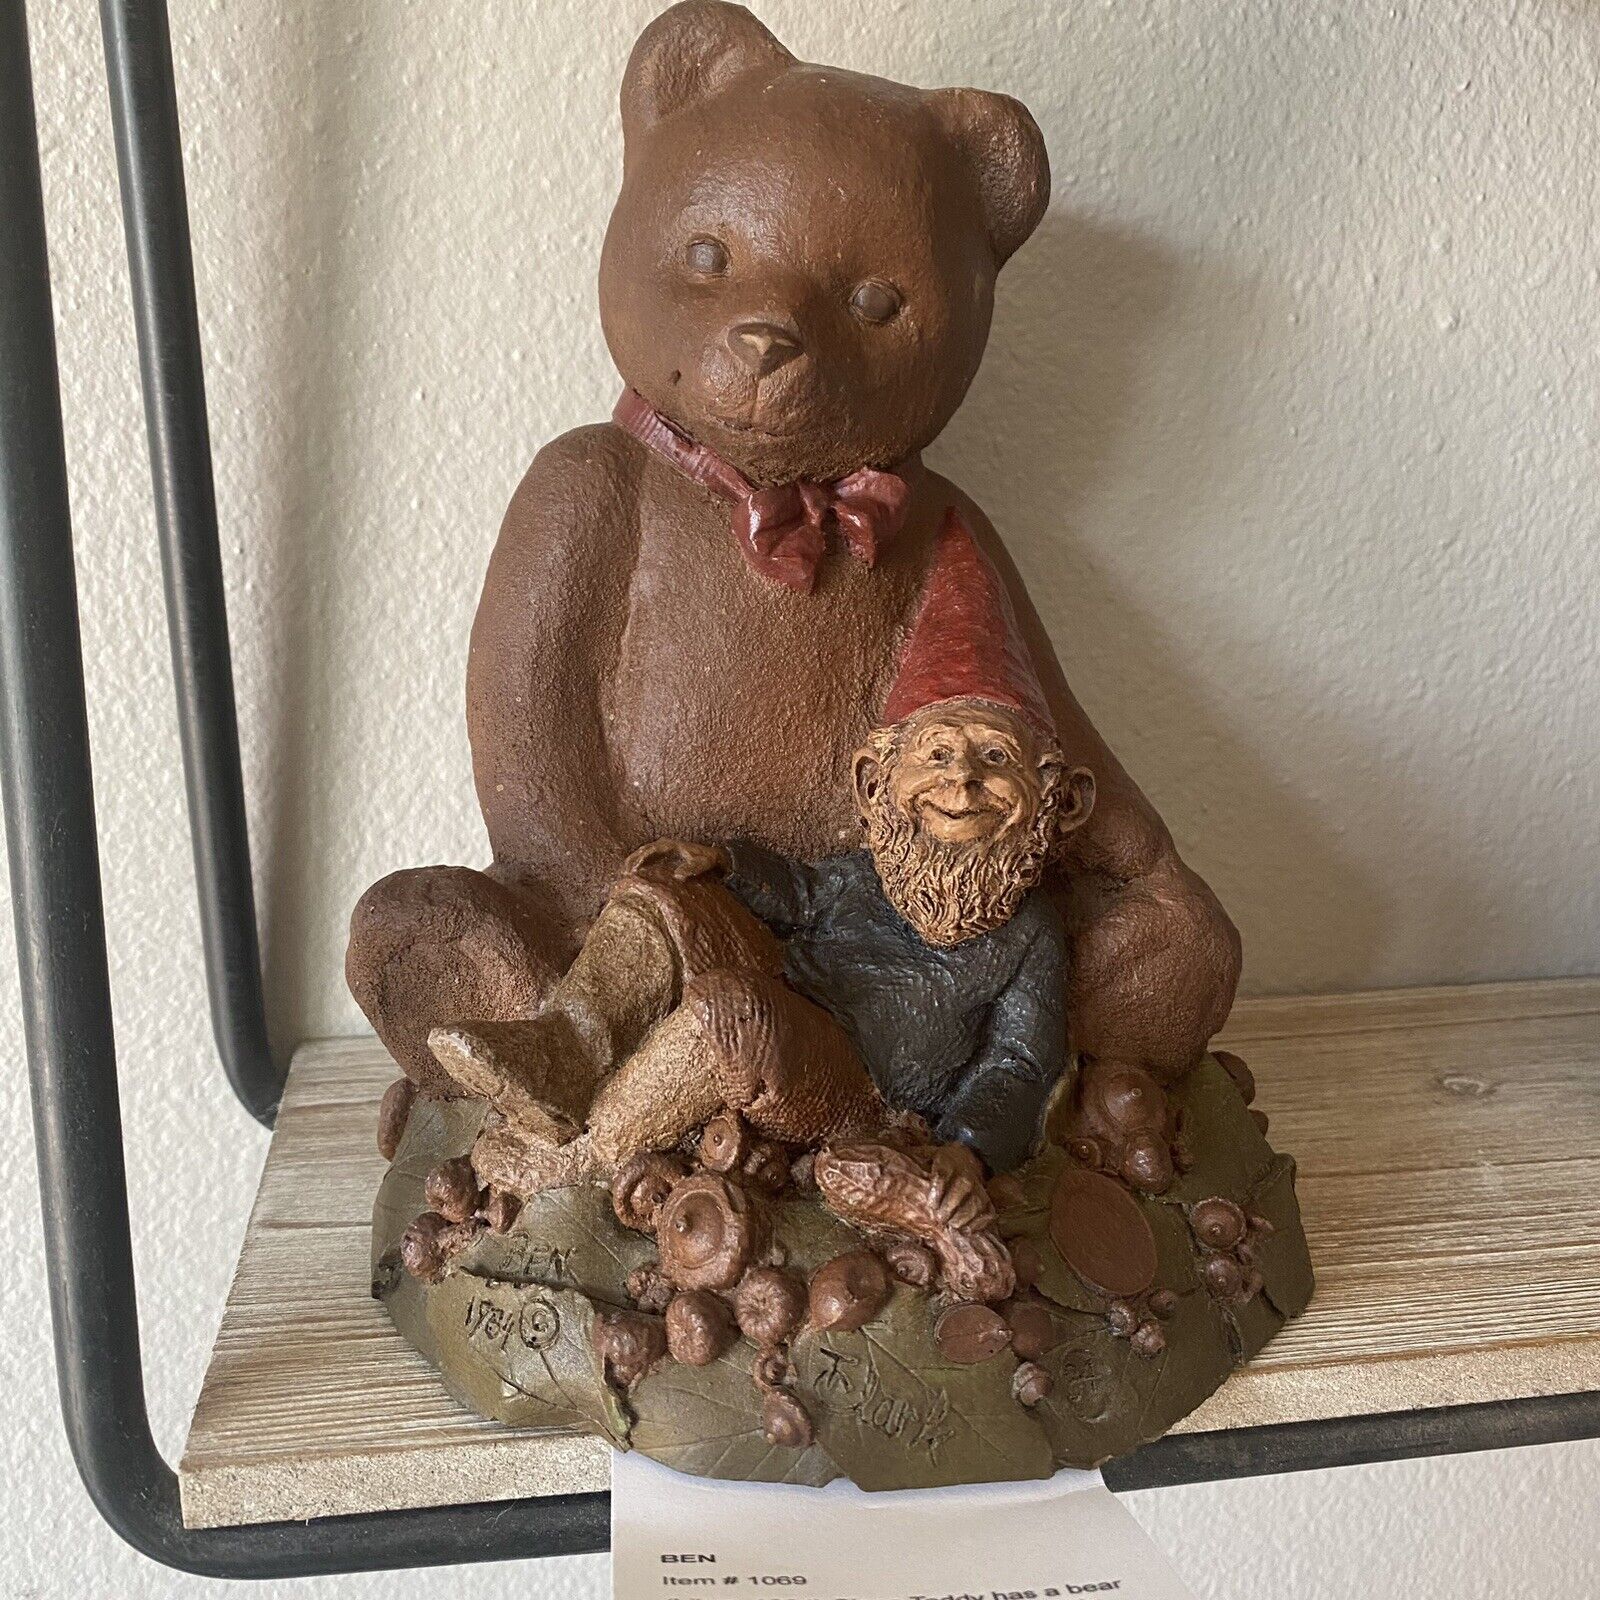 Tom Clark Gnome 1984 BEN Bear #84 8” tall Heavy